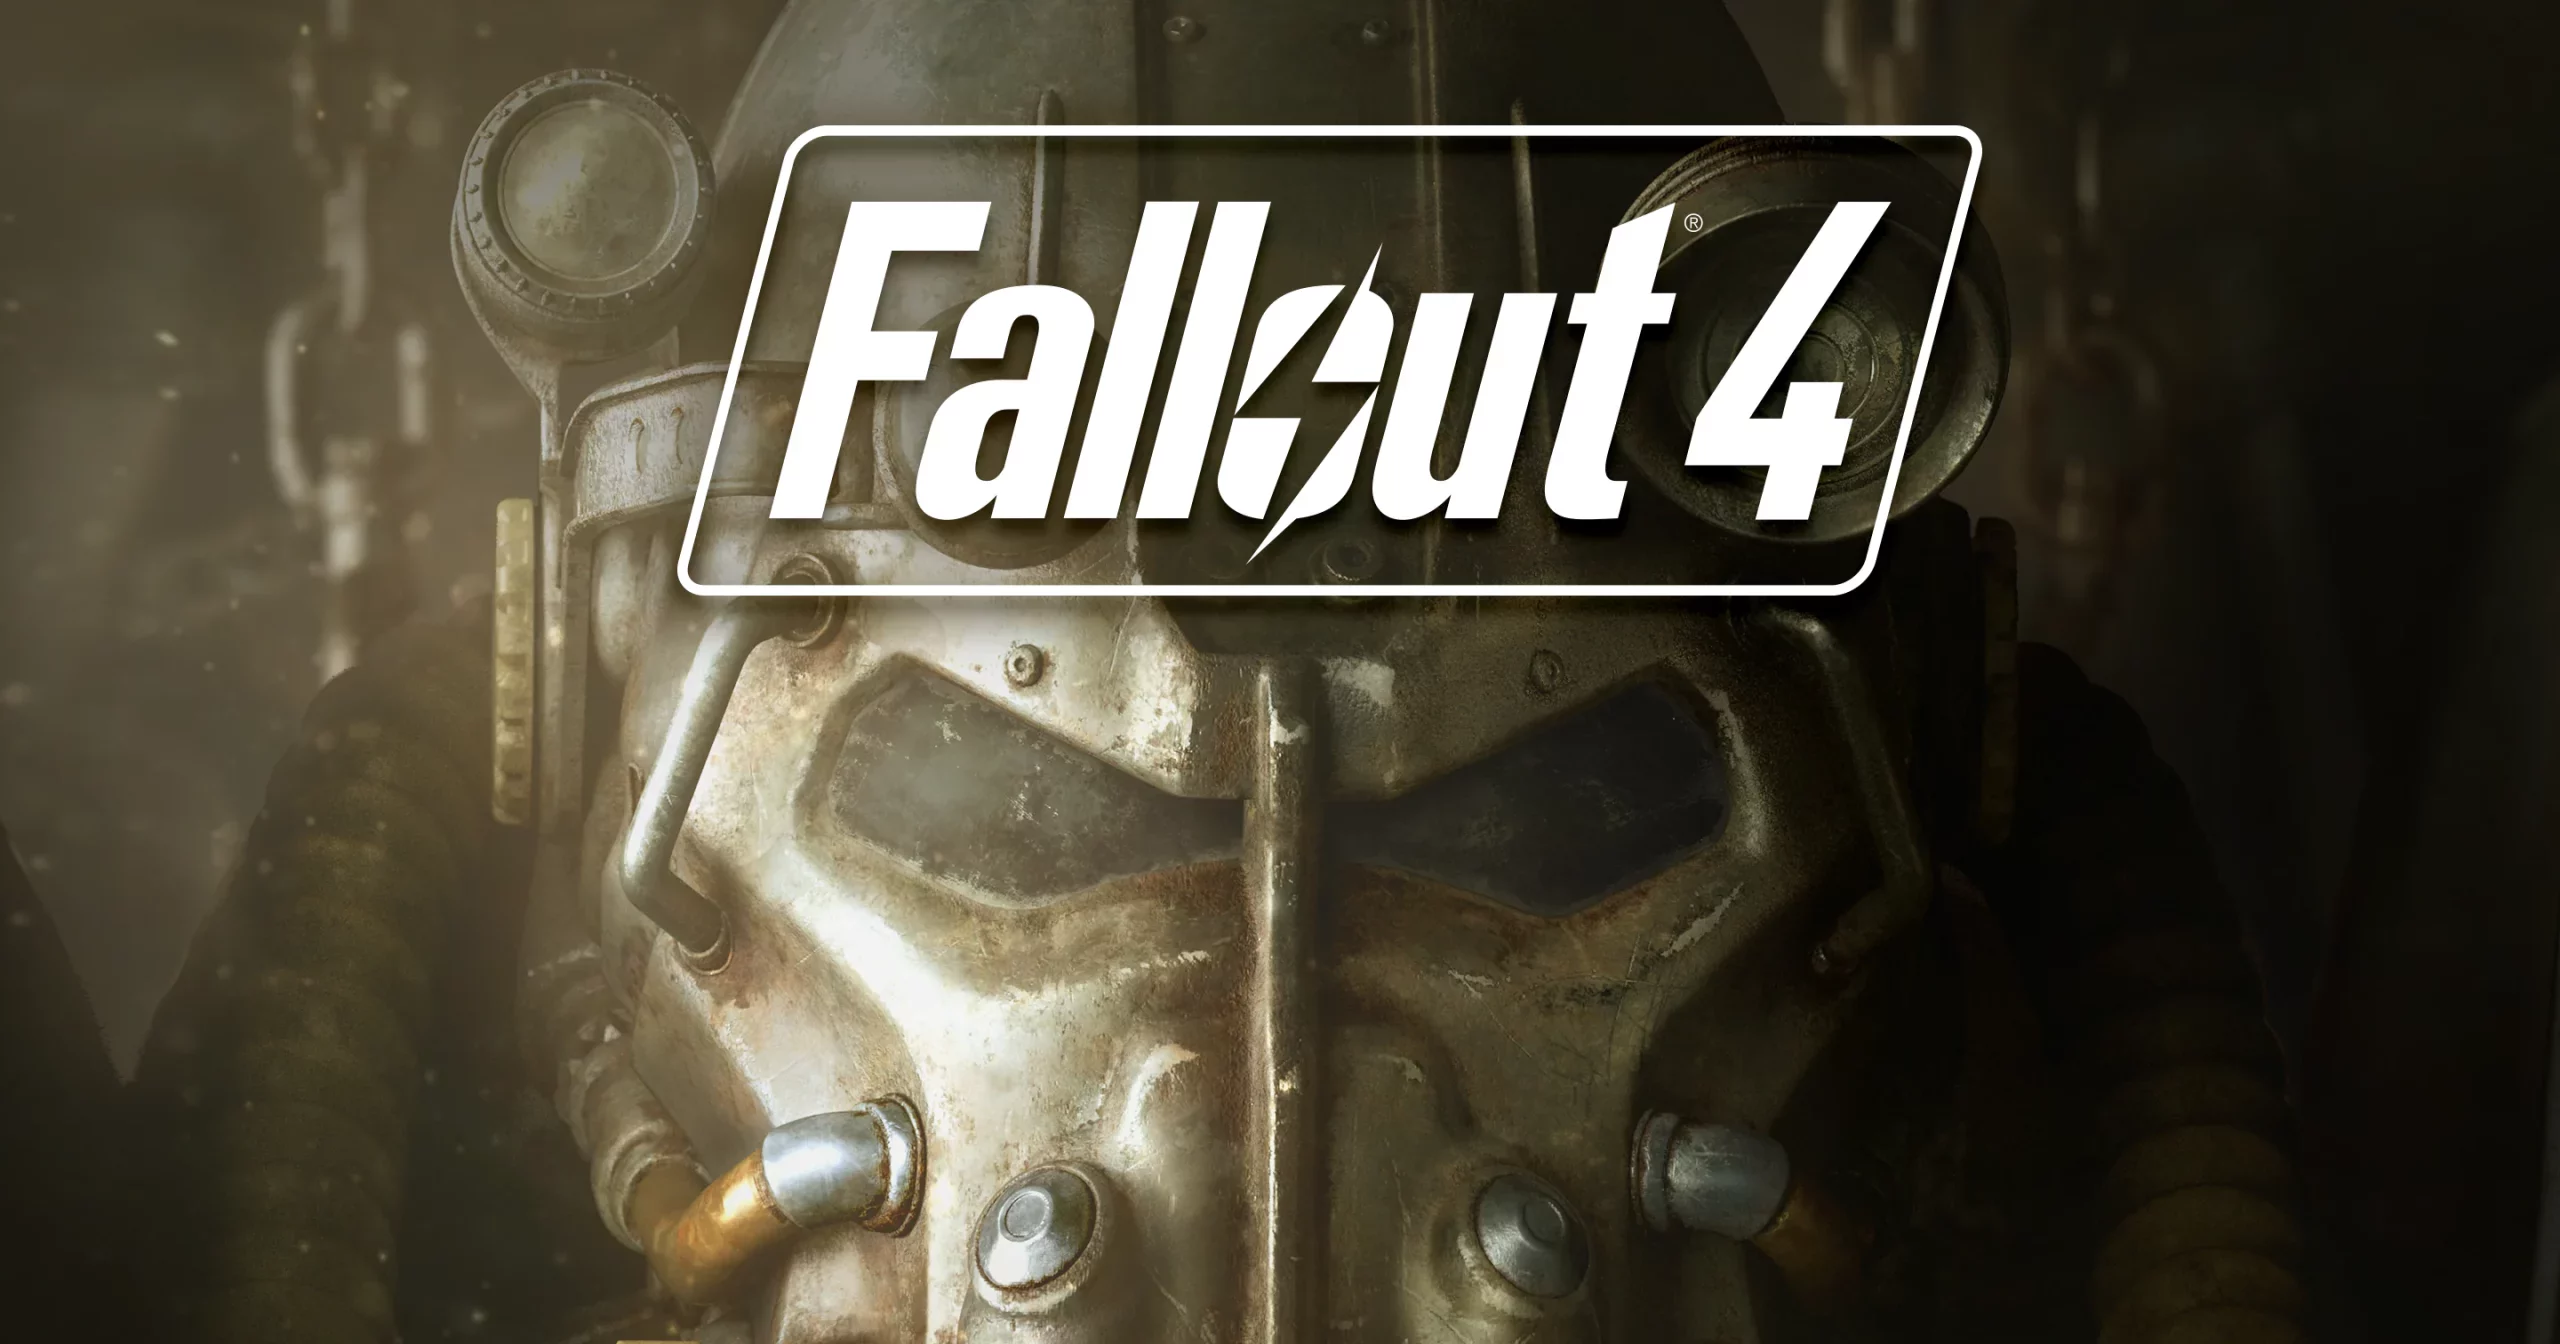 Fallout 4 Box Art